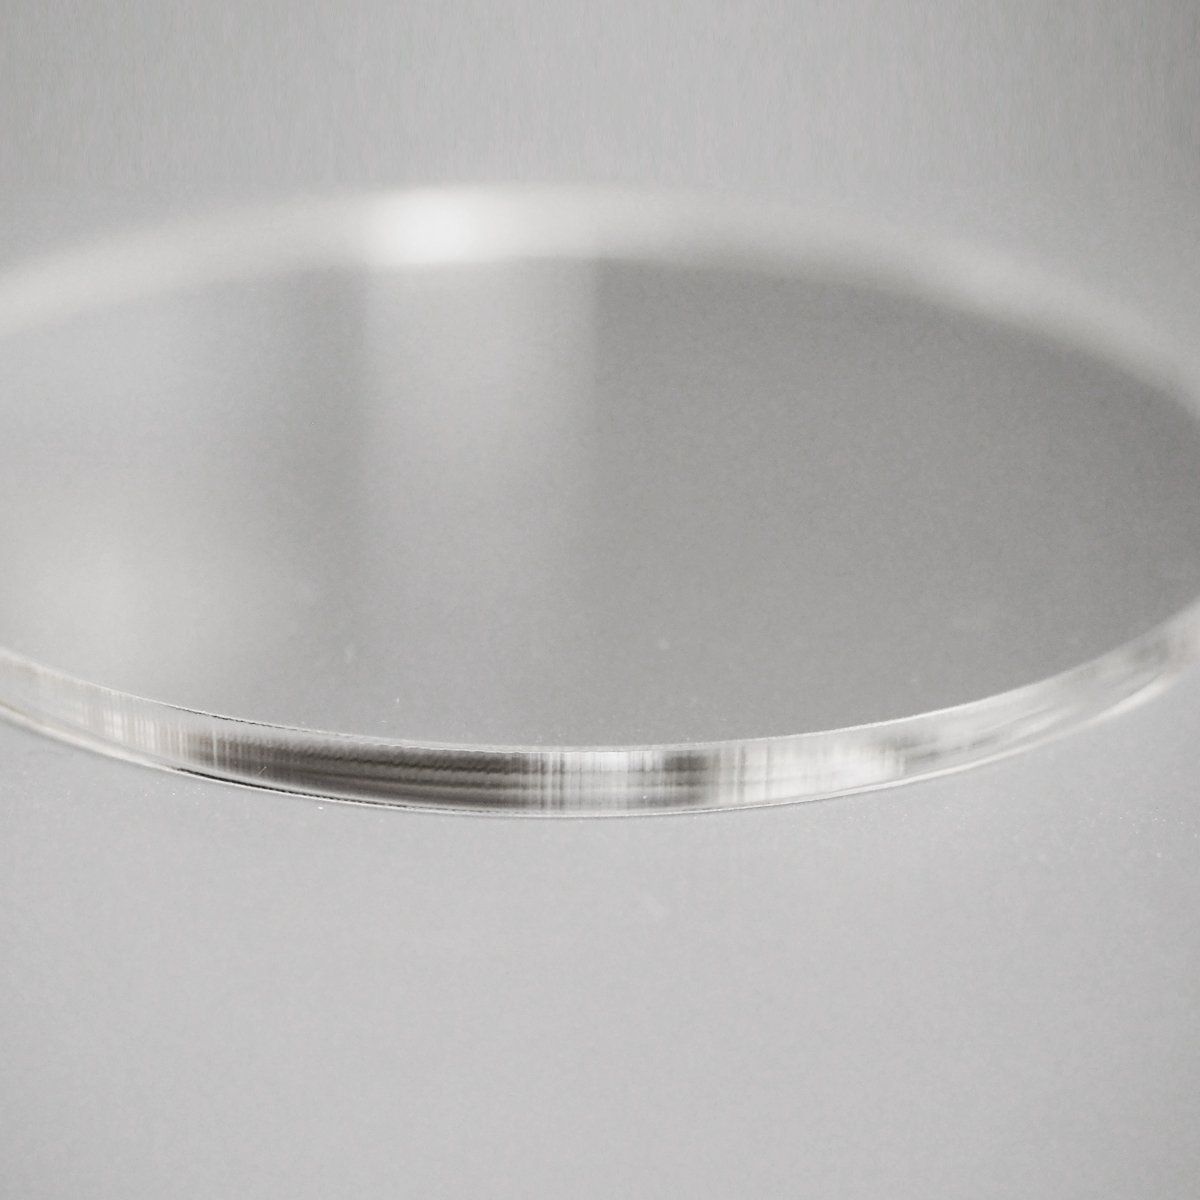 透明 アクリル 3mm厚 円形 直径 7cm 10個セット - メルカリ